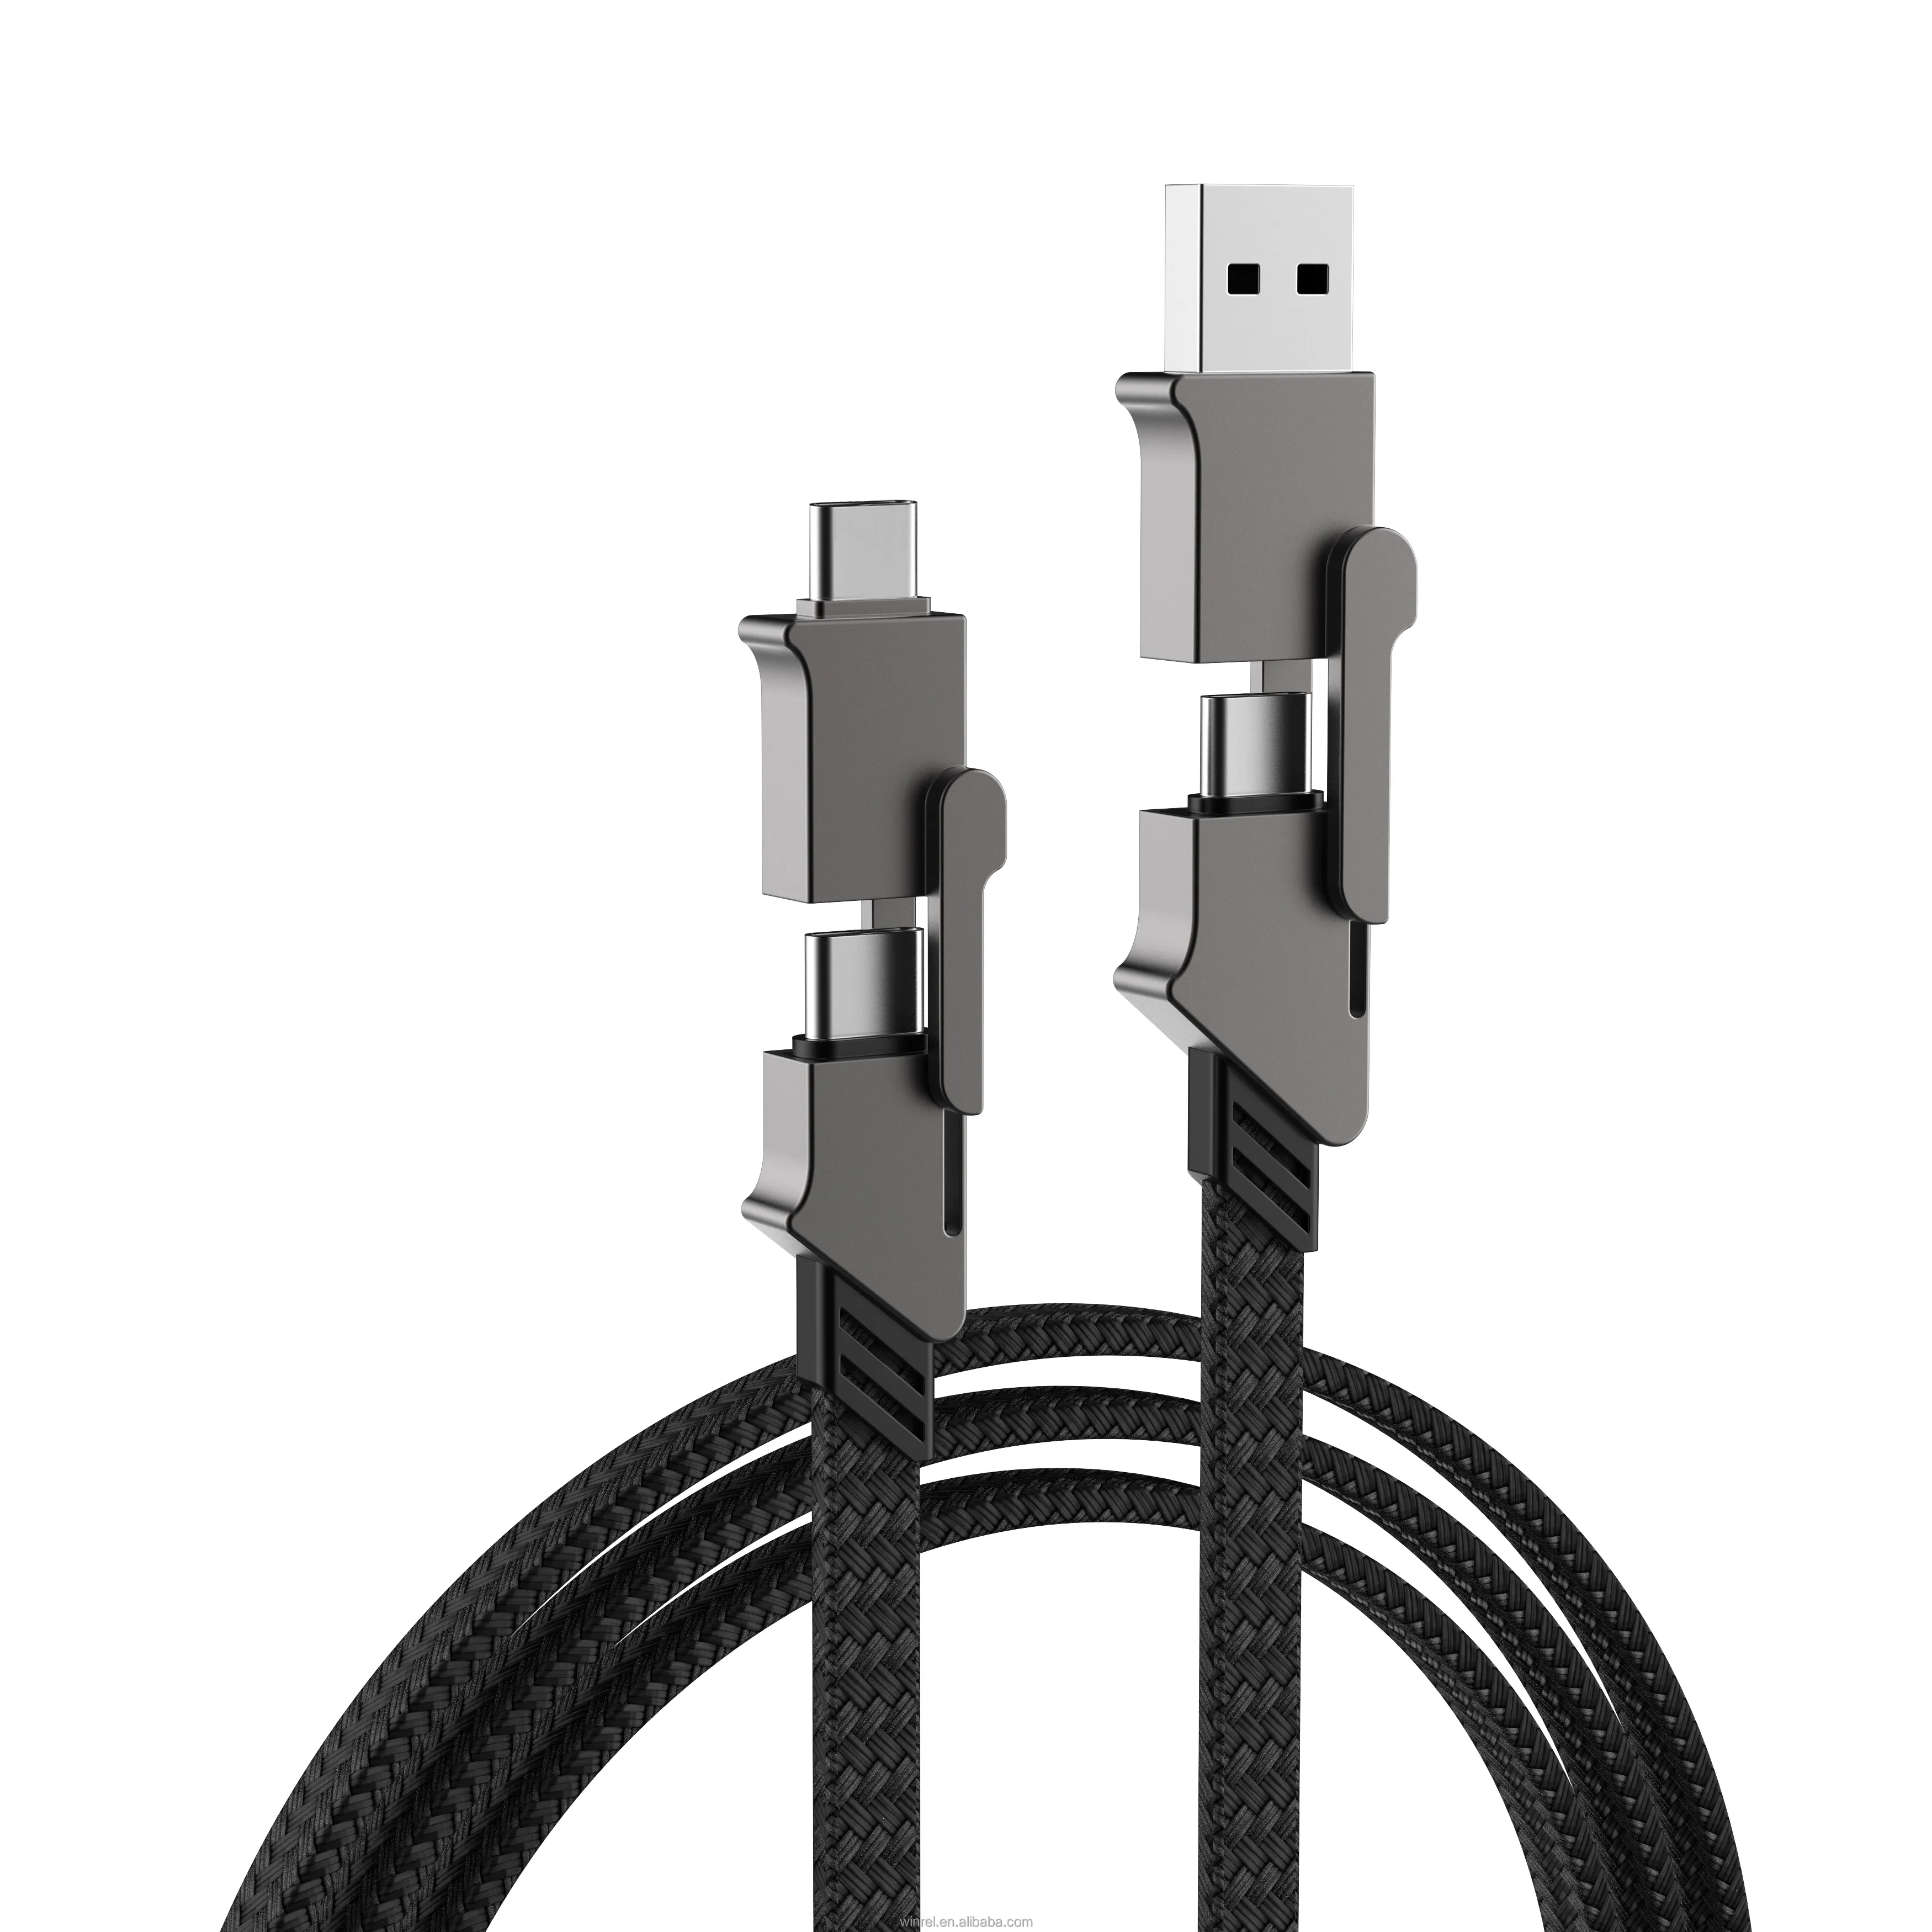 El fabricante vende cables de datos cuatro en uno de aleación de zinc directamente Fabricación de cables USB de 1M